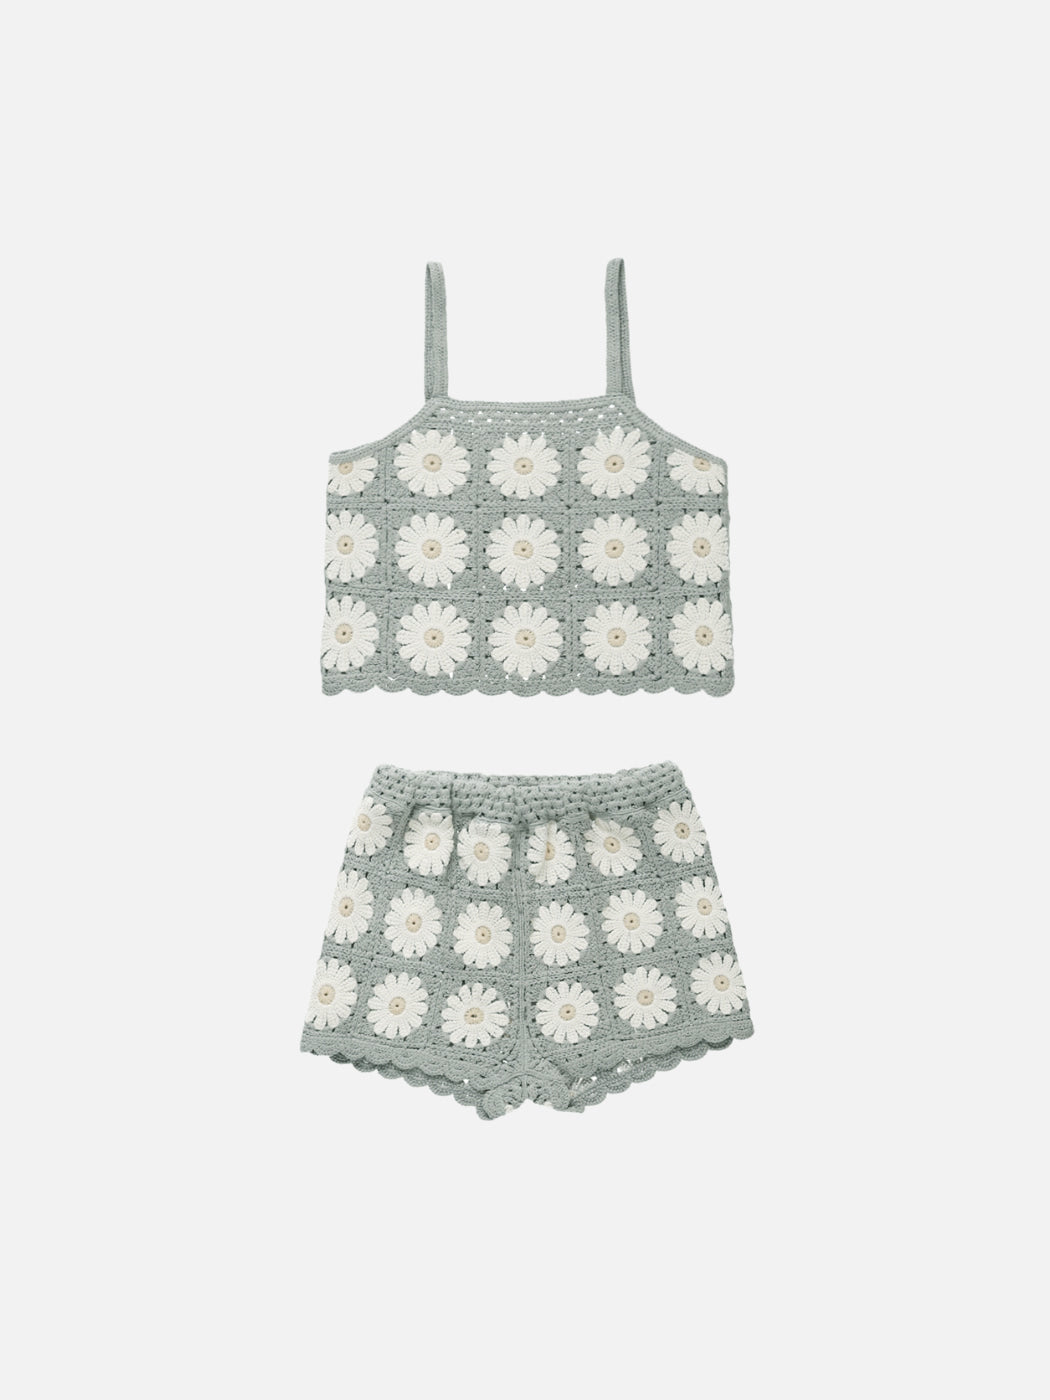 Crochet Summer Set - Daisy